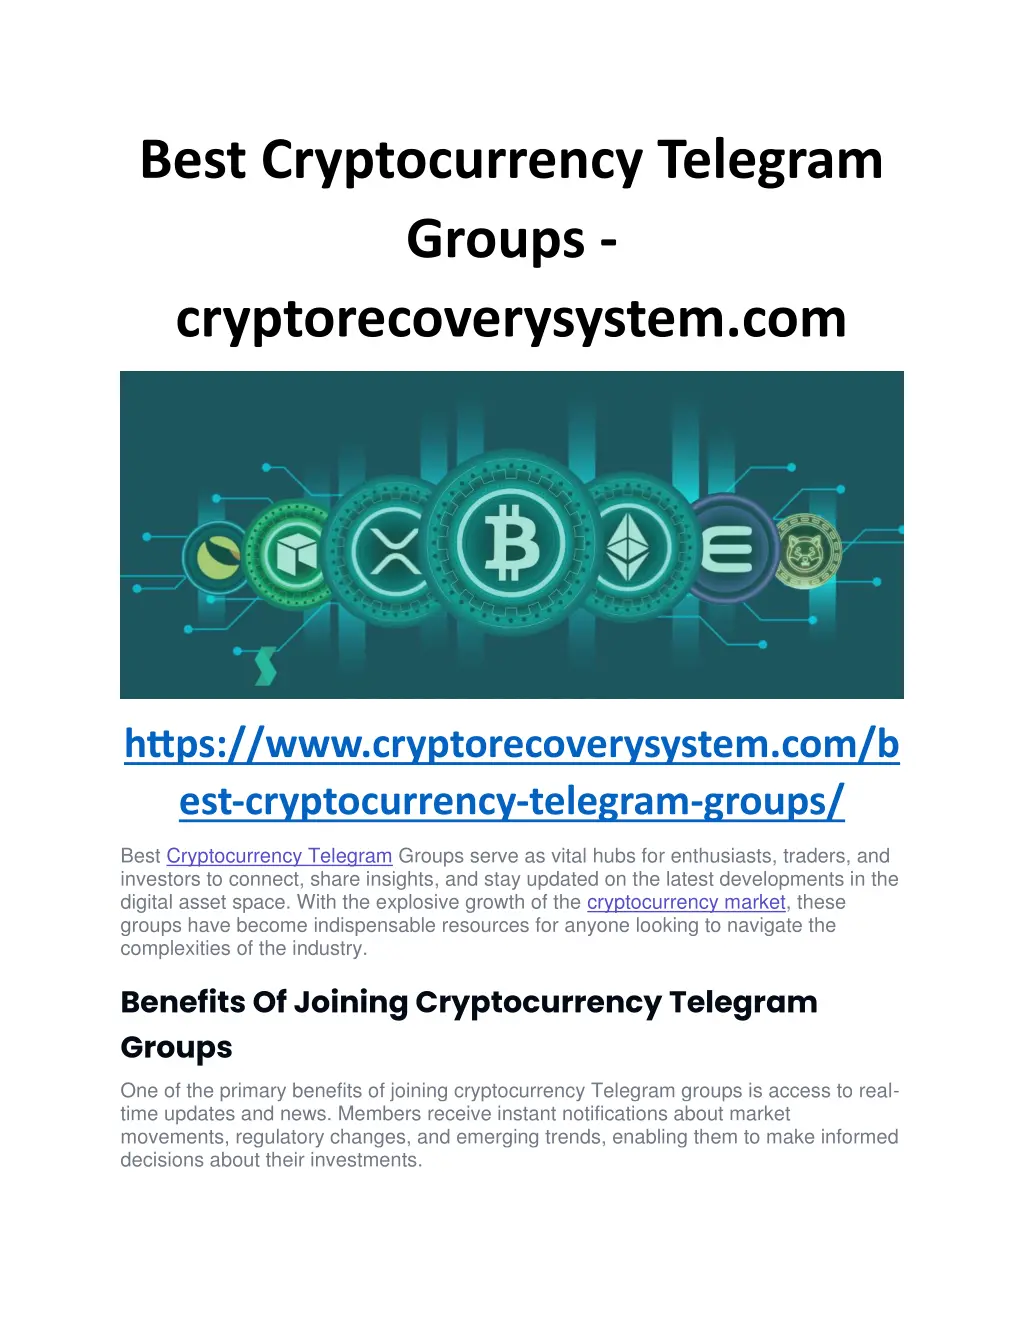 best cryptocurrency telegram groups n.